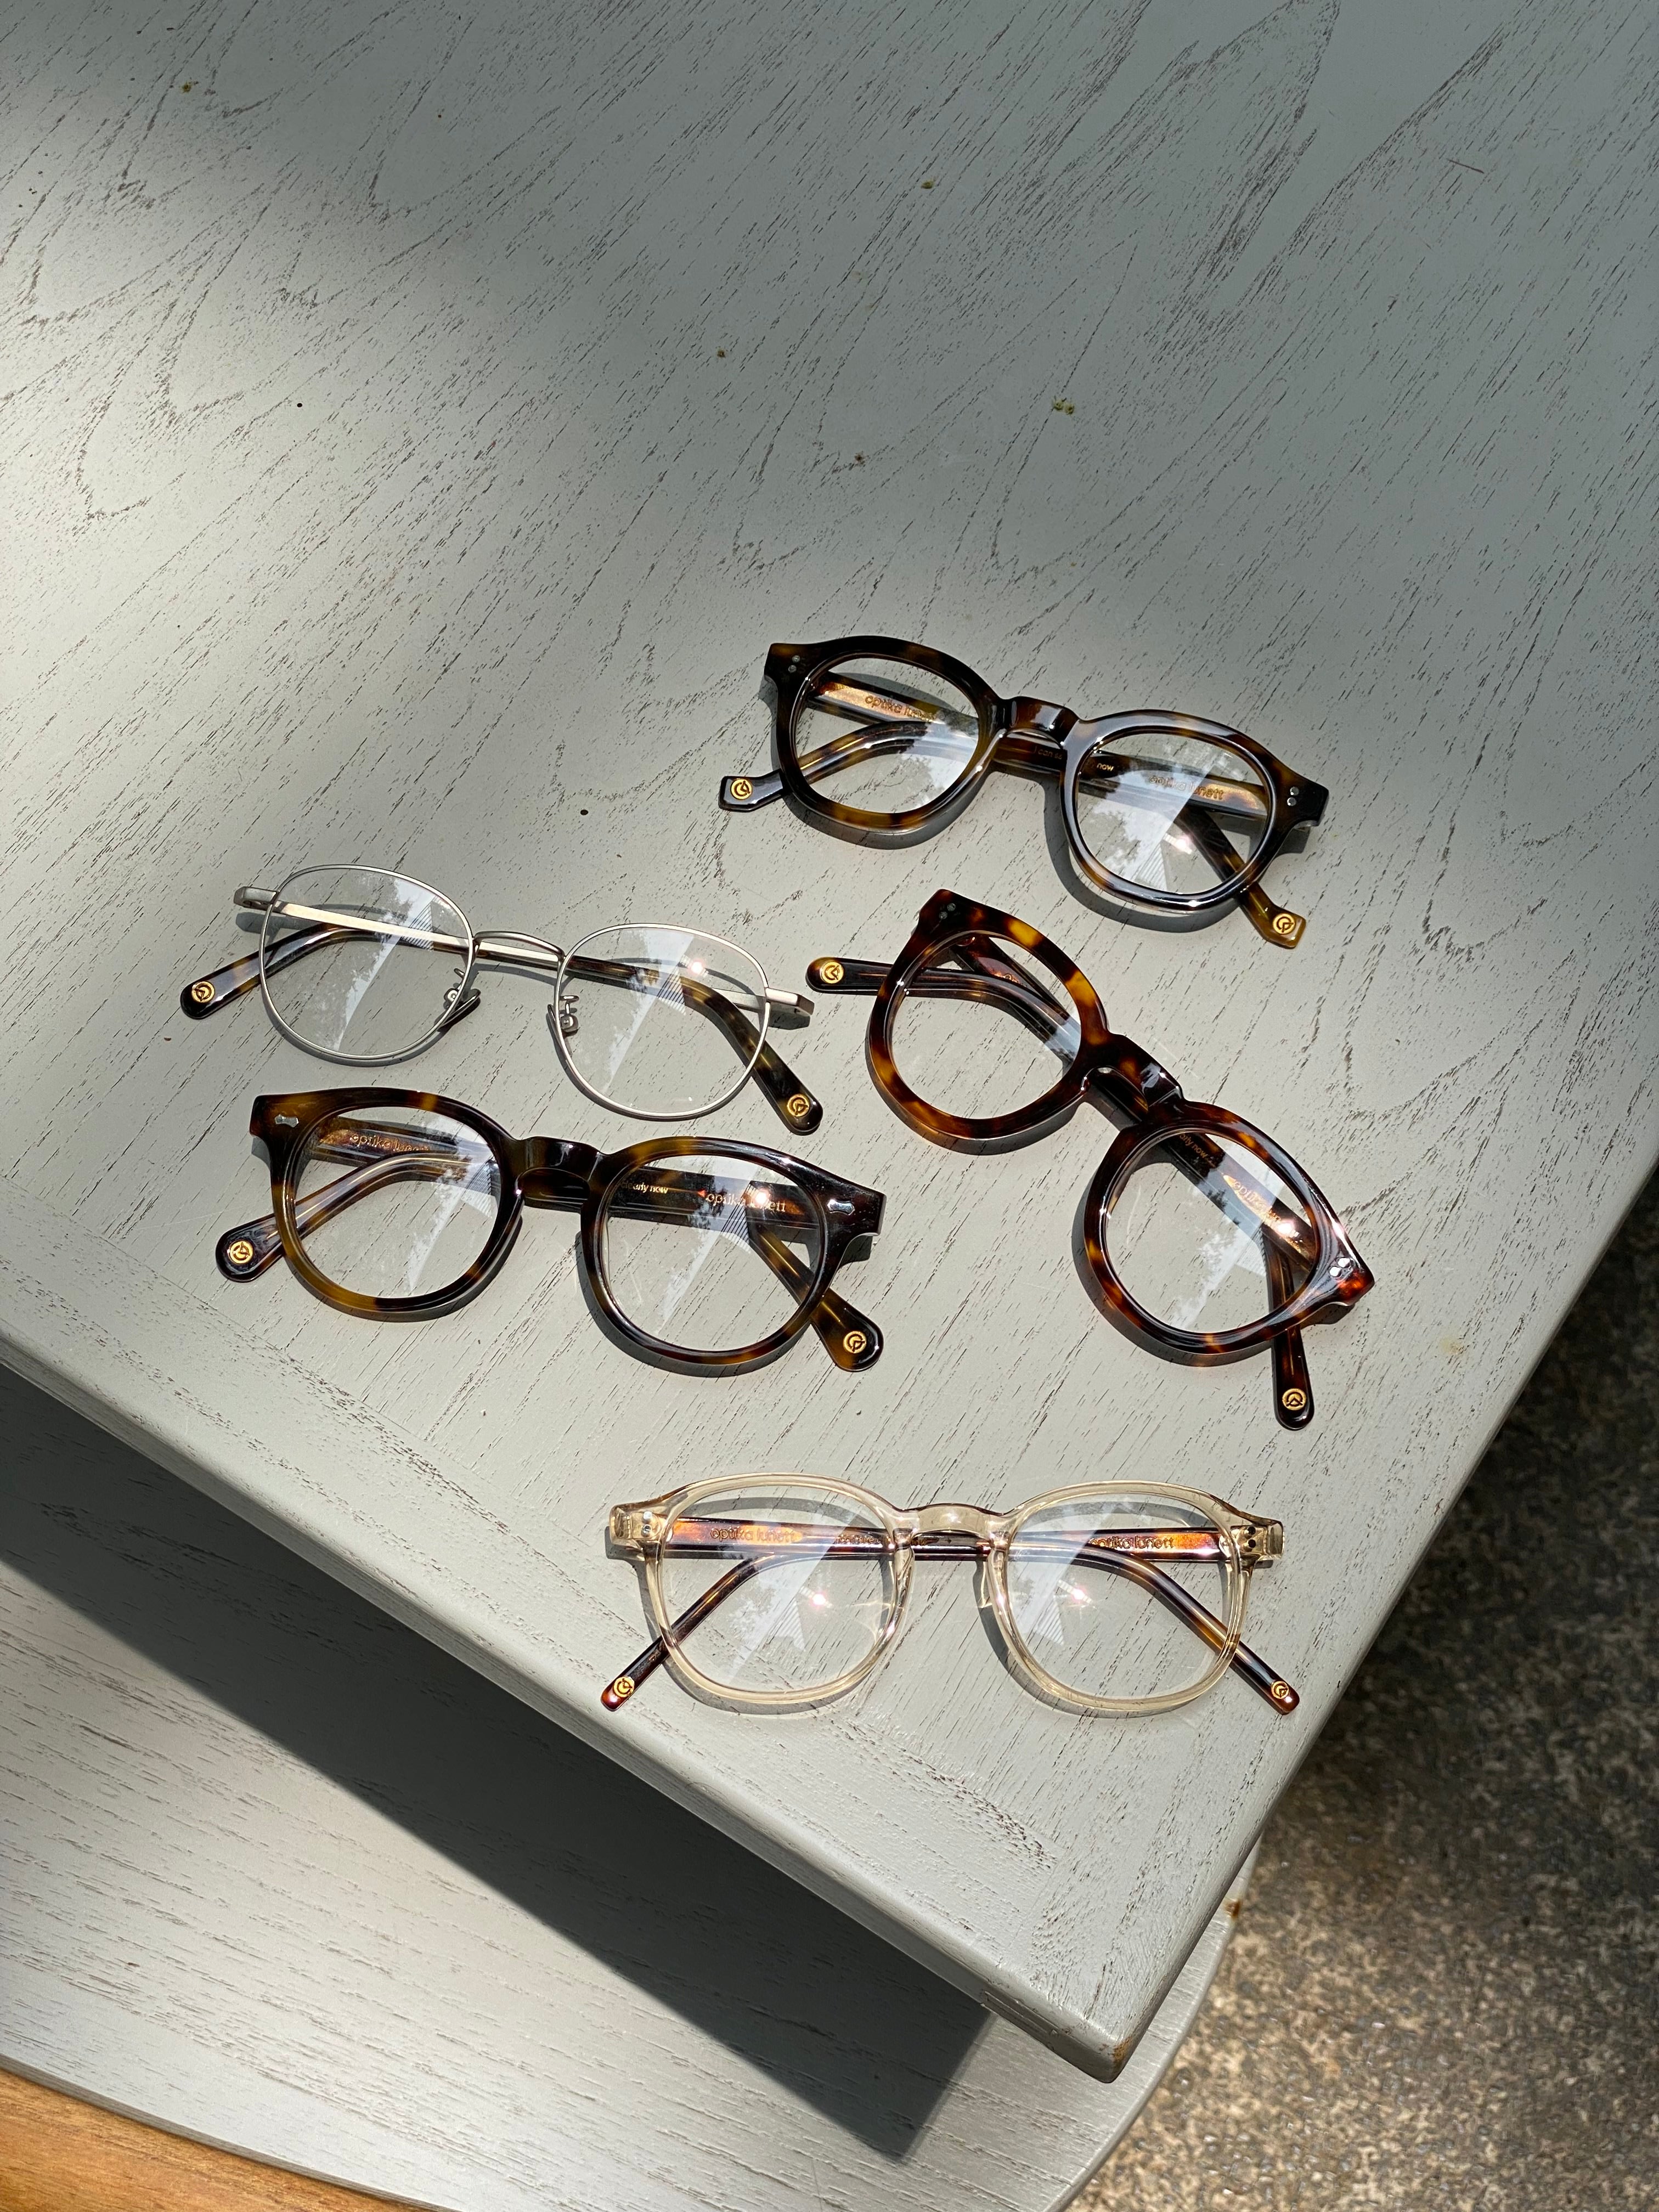 model kacamata, frame kacamata